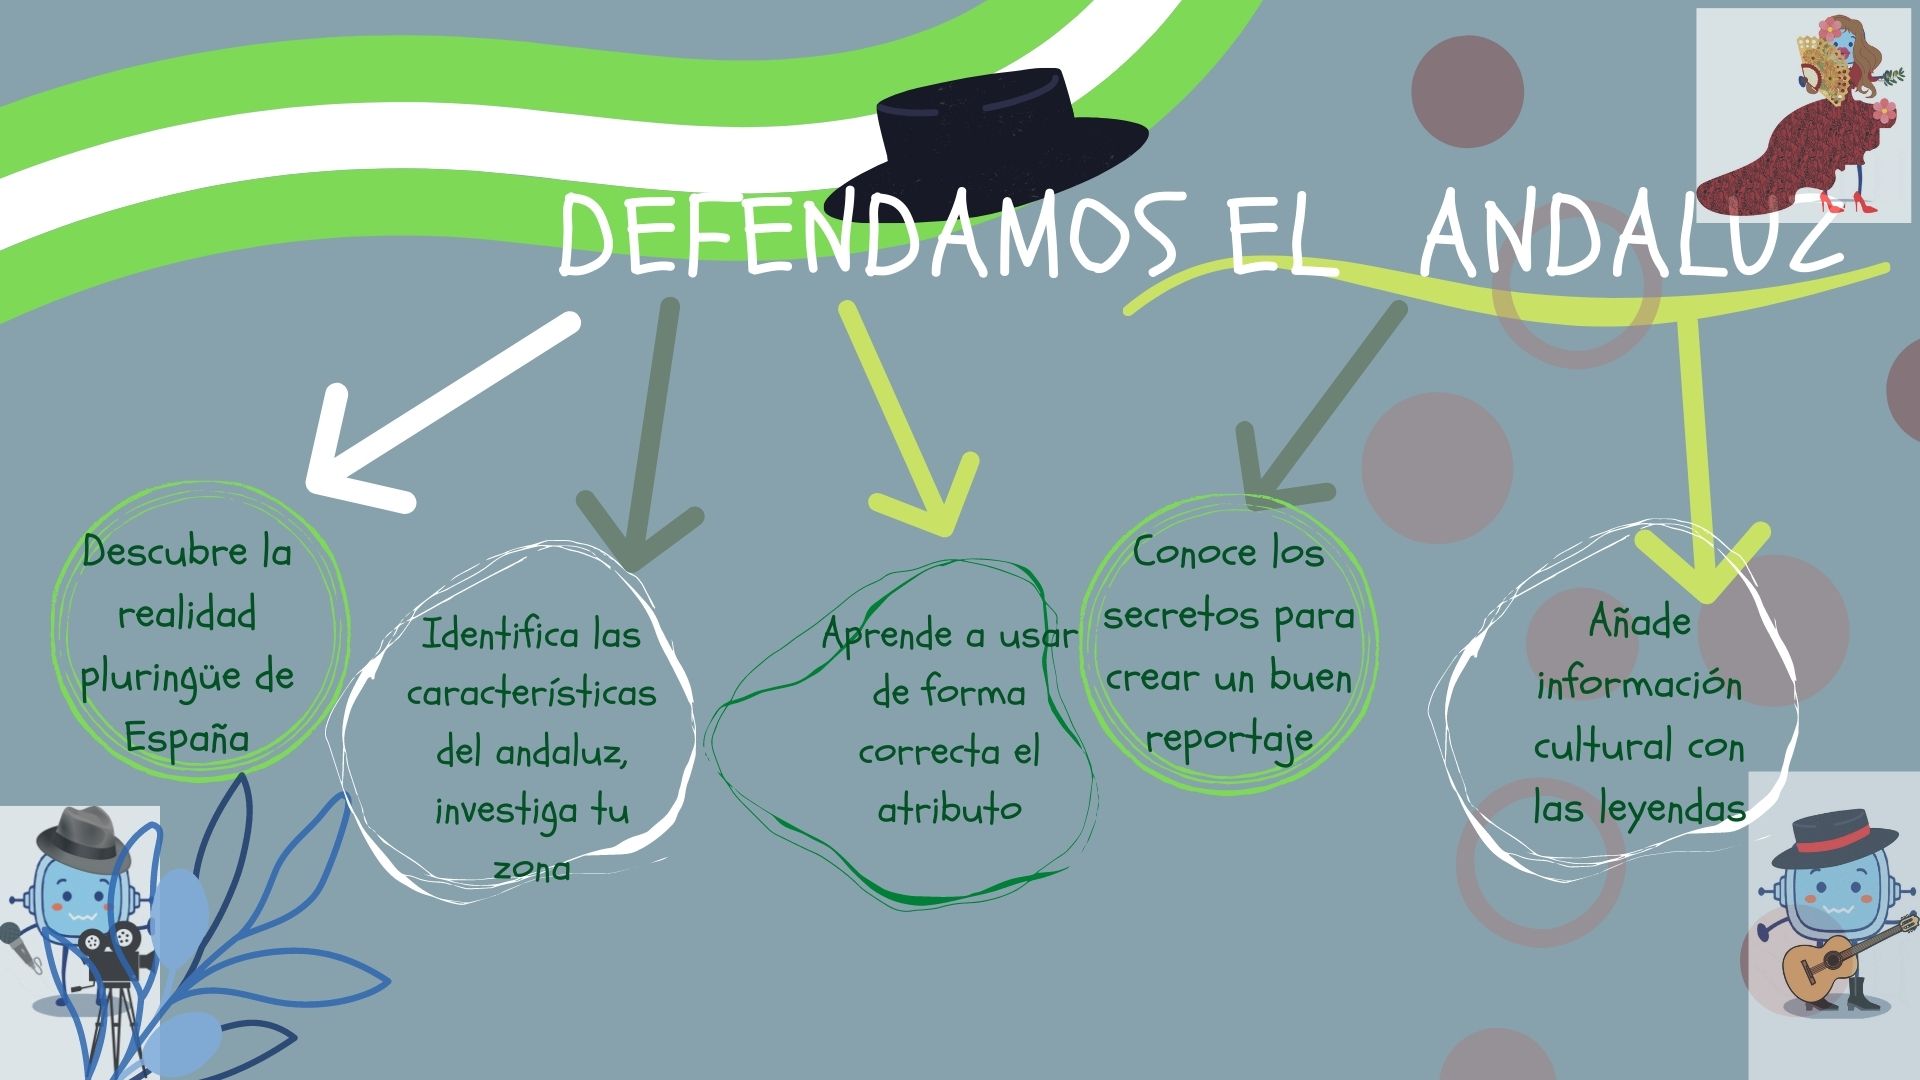 Esta imagen muestra la infografía de Defendamos el andaluz